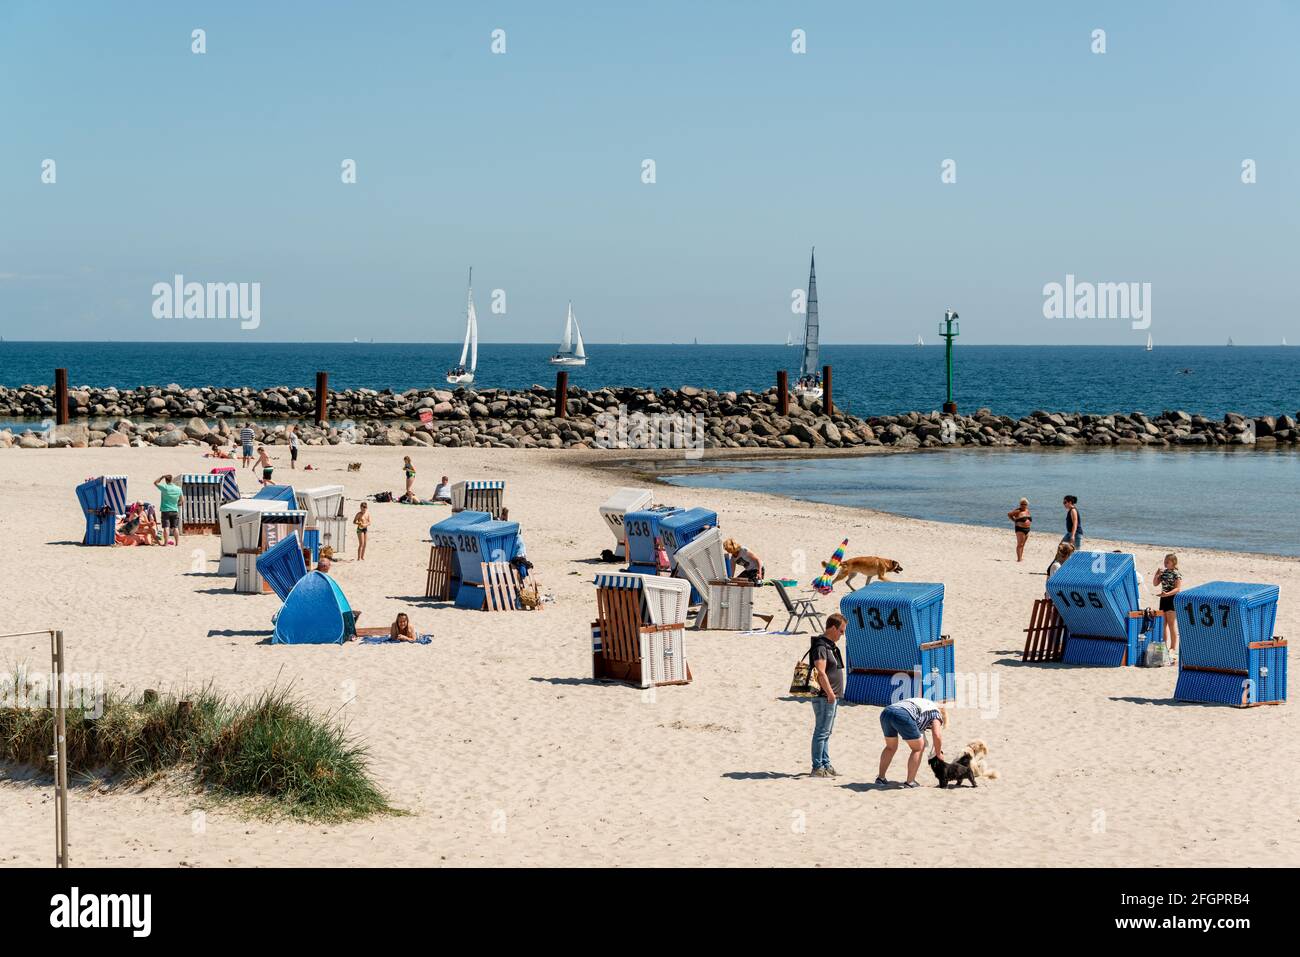 Schleswig-Holstein, avril 2021 - Sommerliche Impressionen aus dem Ostseebad humide mit Strandmotiven Banque D'Images